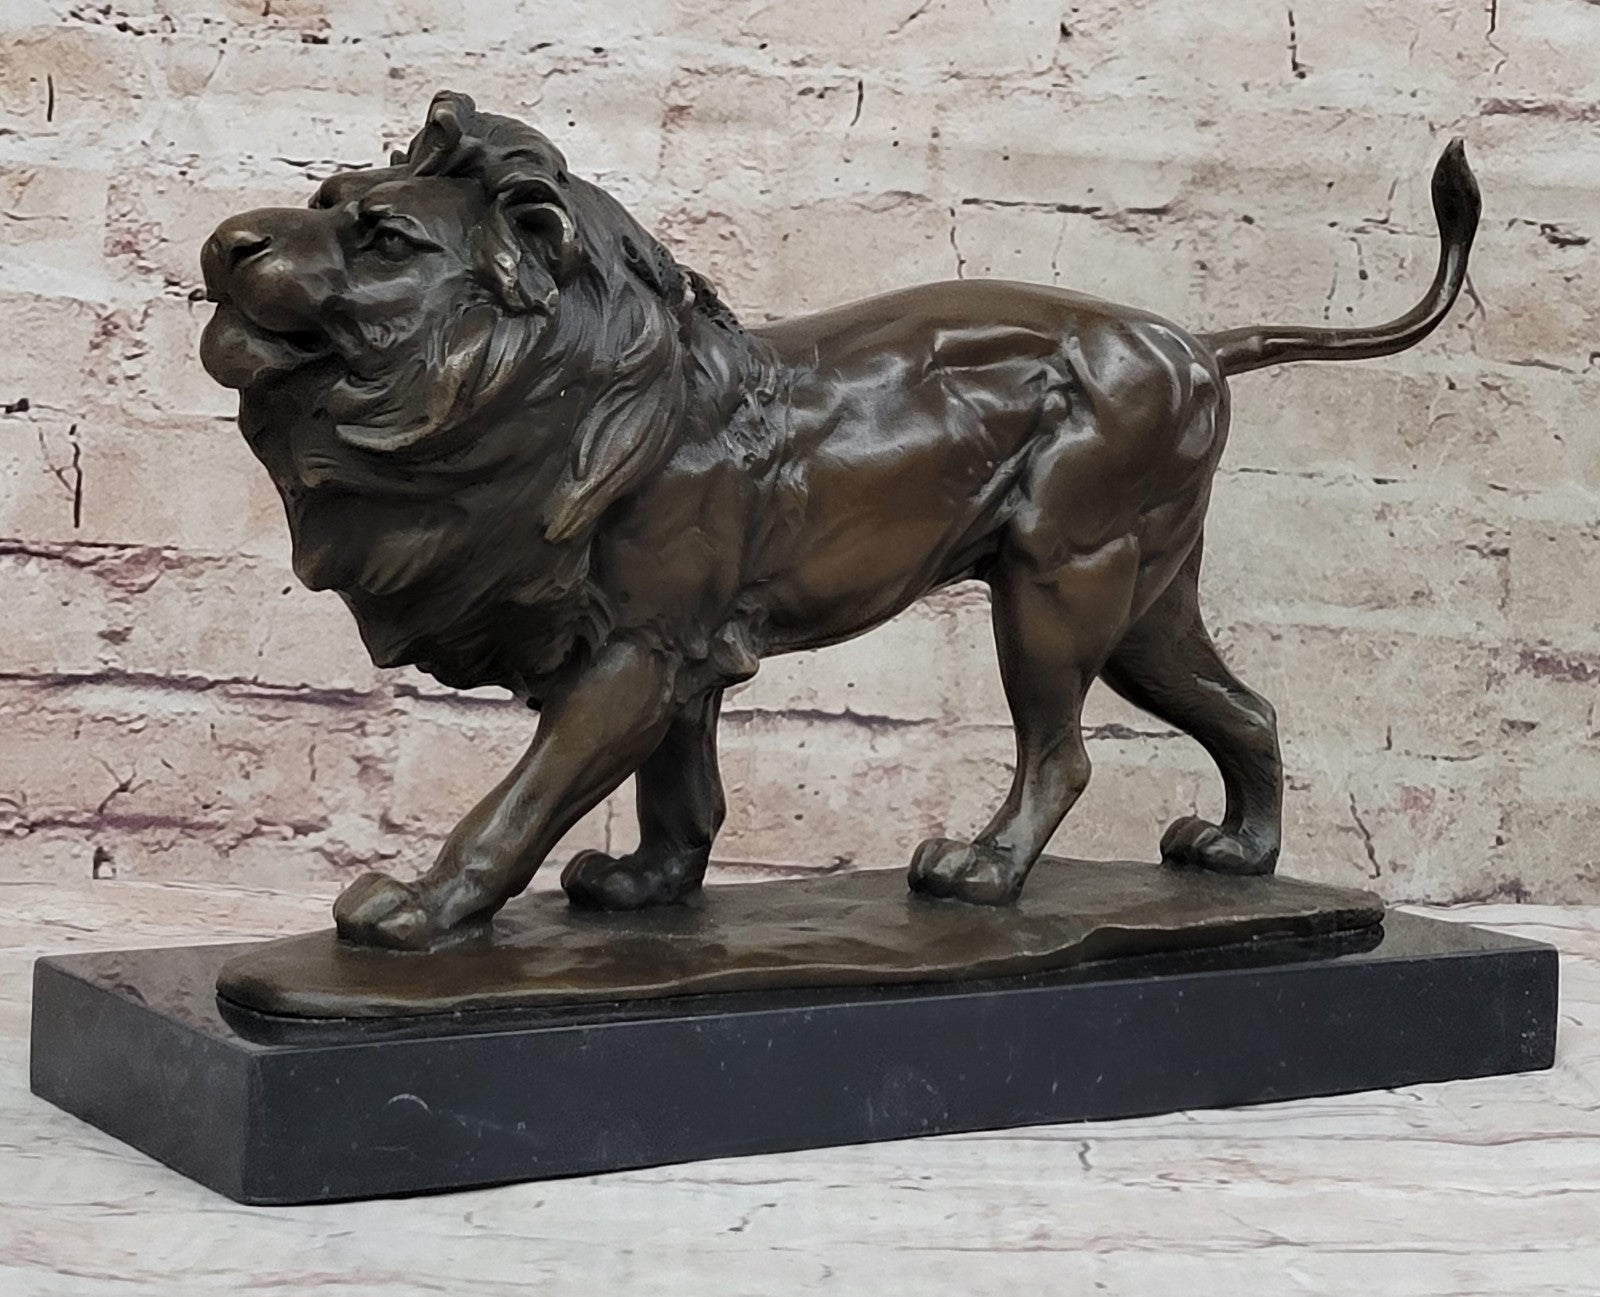 15" Art Deco Sculpture Animal Male Lion Marble Base Bronze Statue